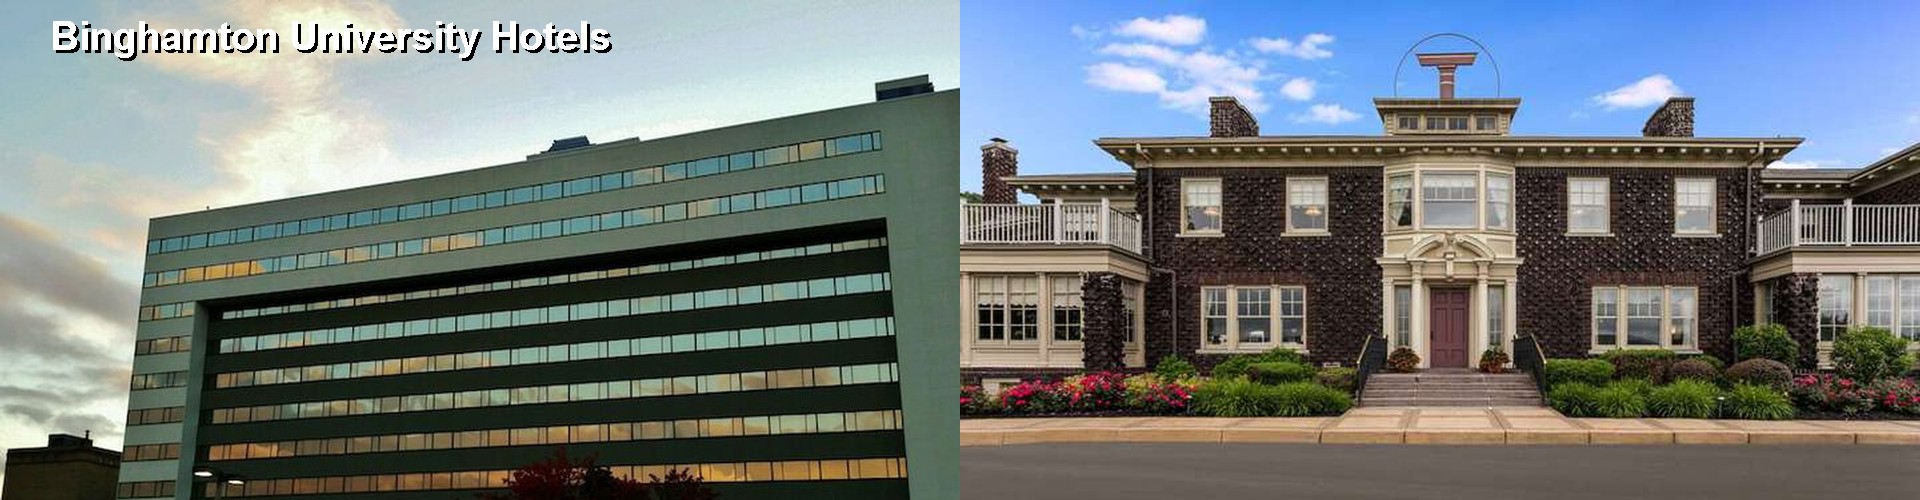 5 Best Hotels near Binghamton University